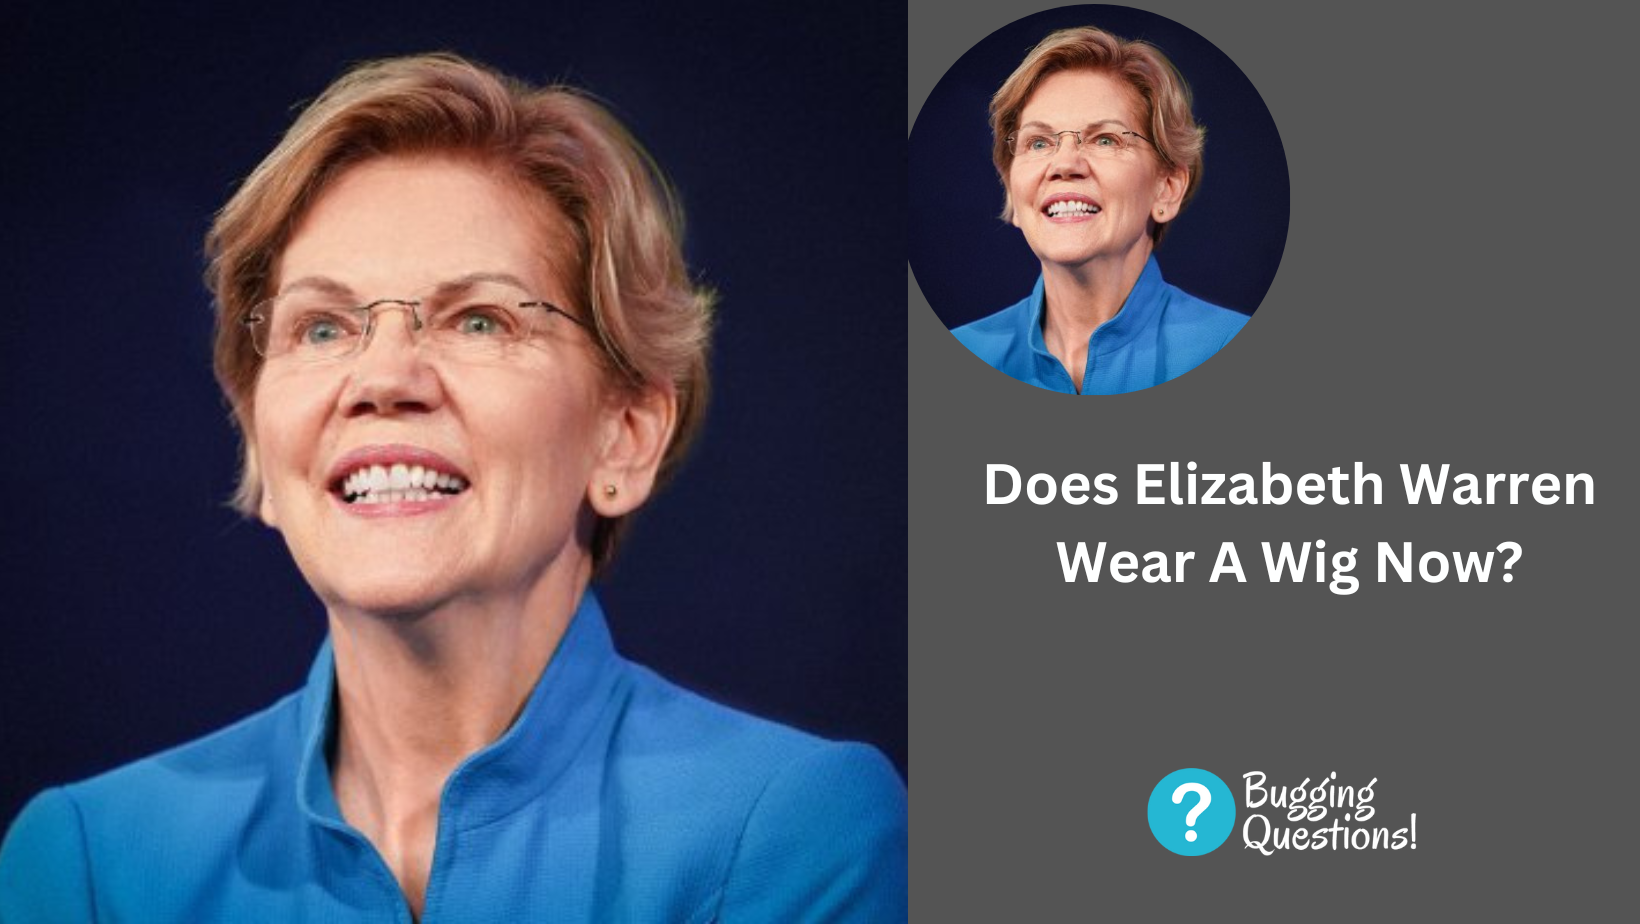 Does Elizabeth Warren Wear A Wig Now?